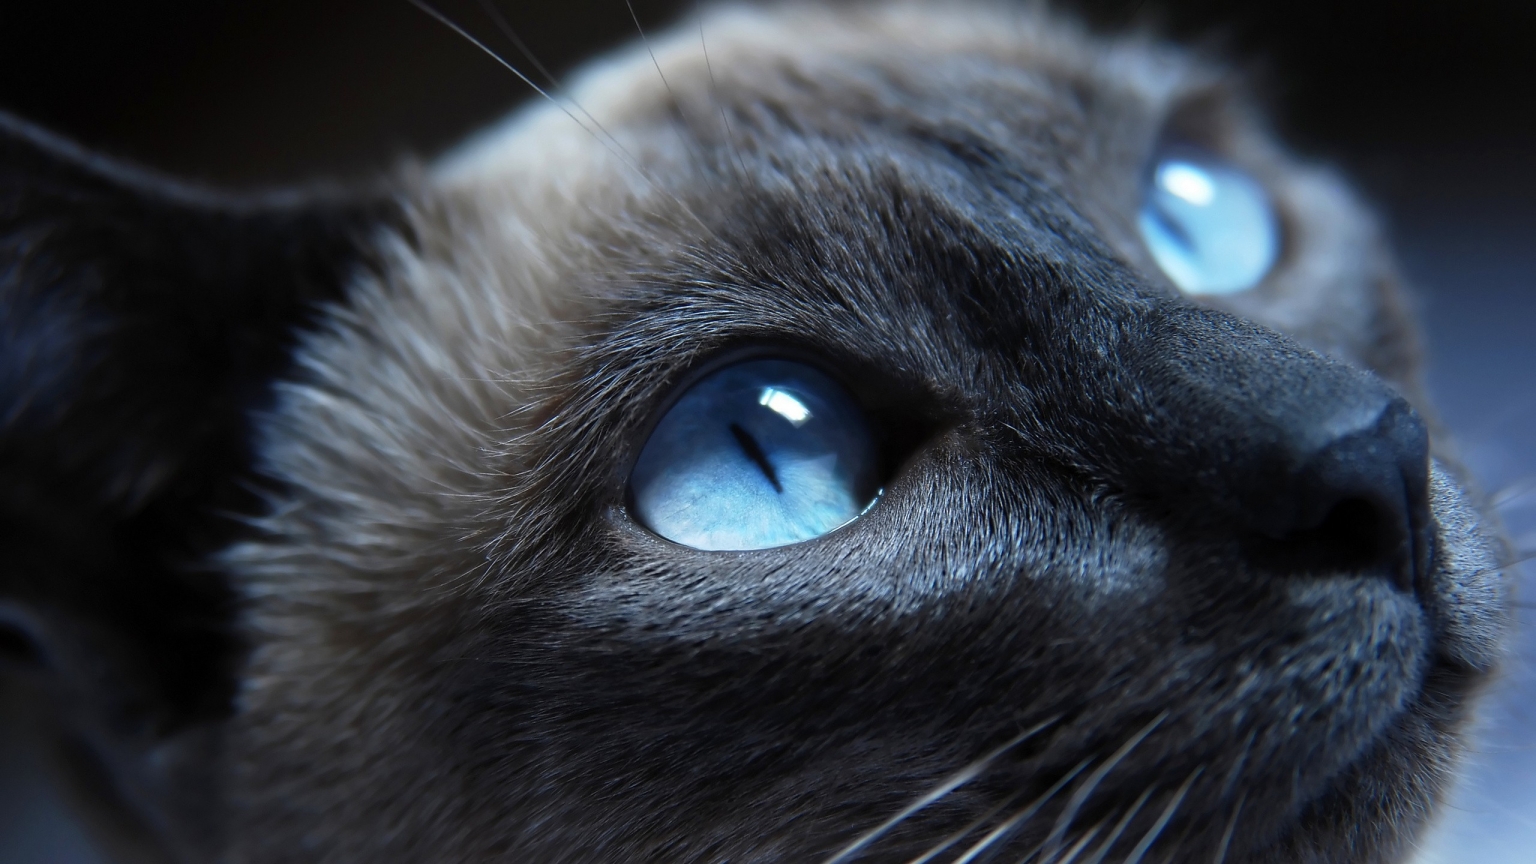 Cat Blue Eyes for 1536 x 864 HDTV resolution